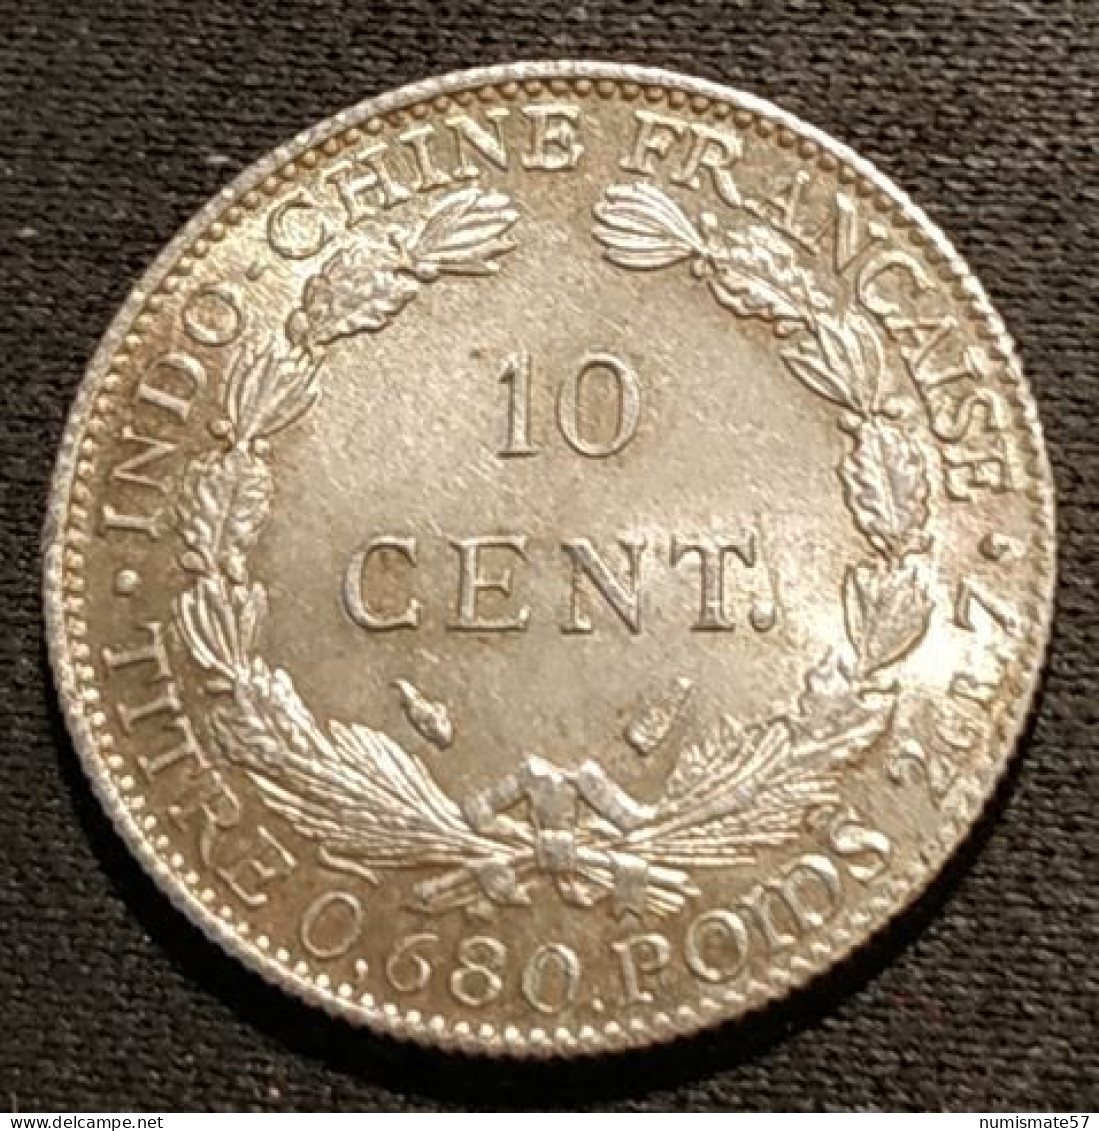 Qualité - INDOCHINE - 10 CENTIMES 1937 - Argent - Silver - KM 16.2 - Indochine